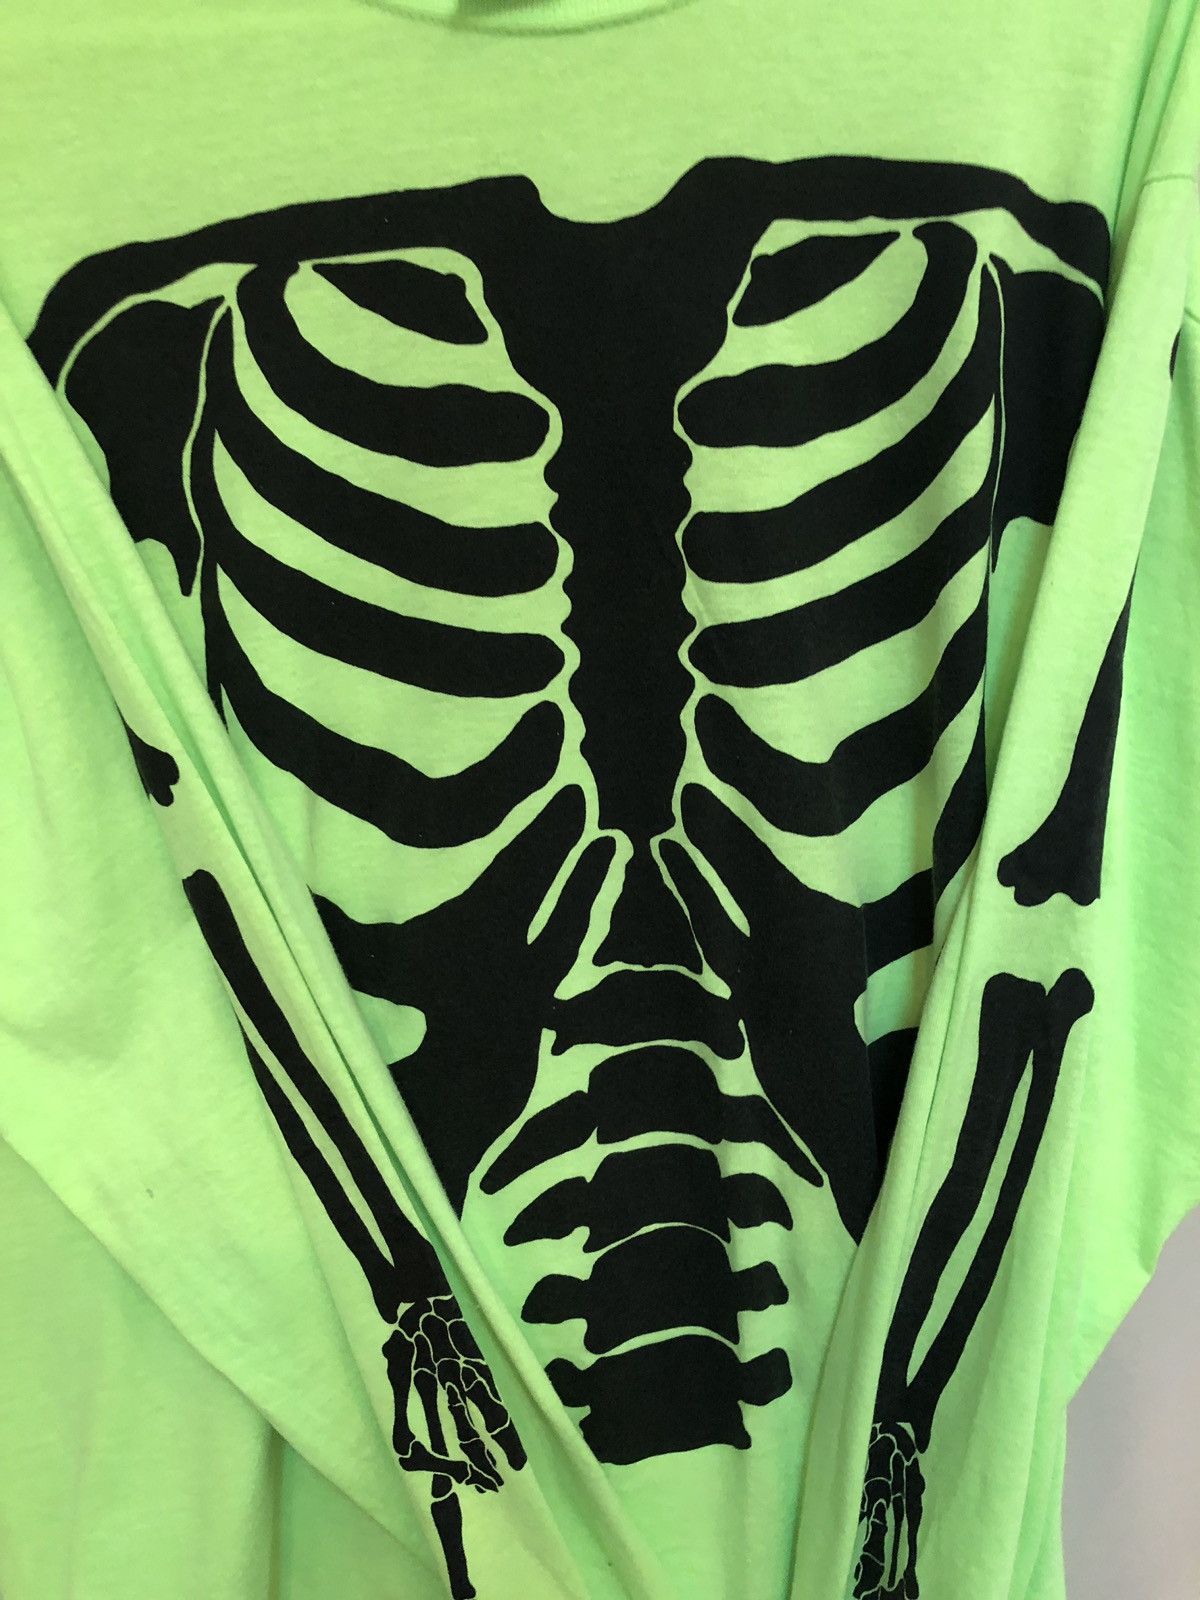 Vlone Playboi Carti Skeleton Die Lit Tour Shirt Size US M / EU 48-50 / 2 - 6 Preview